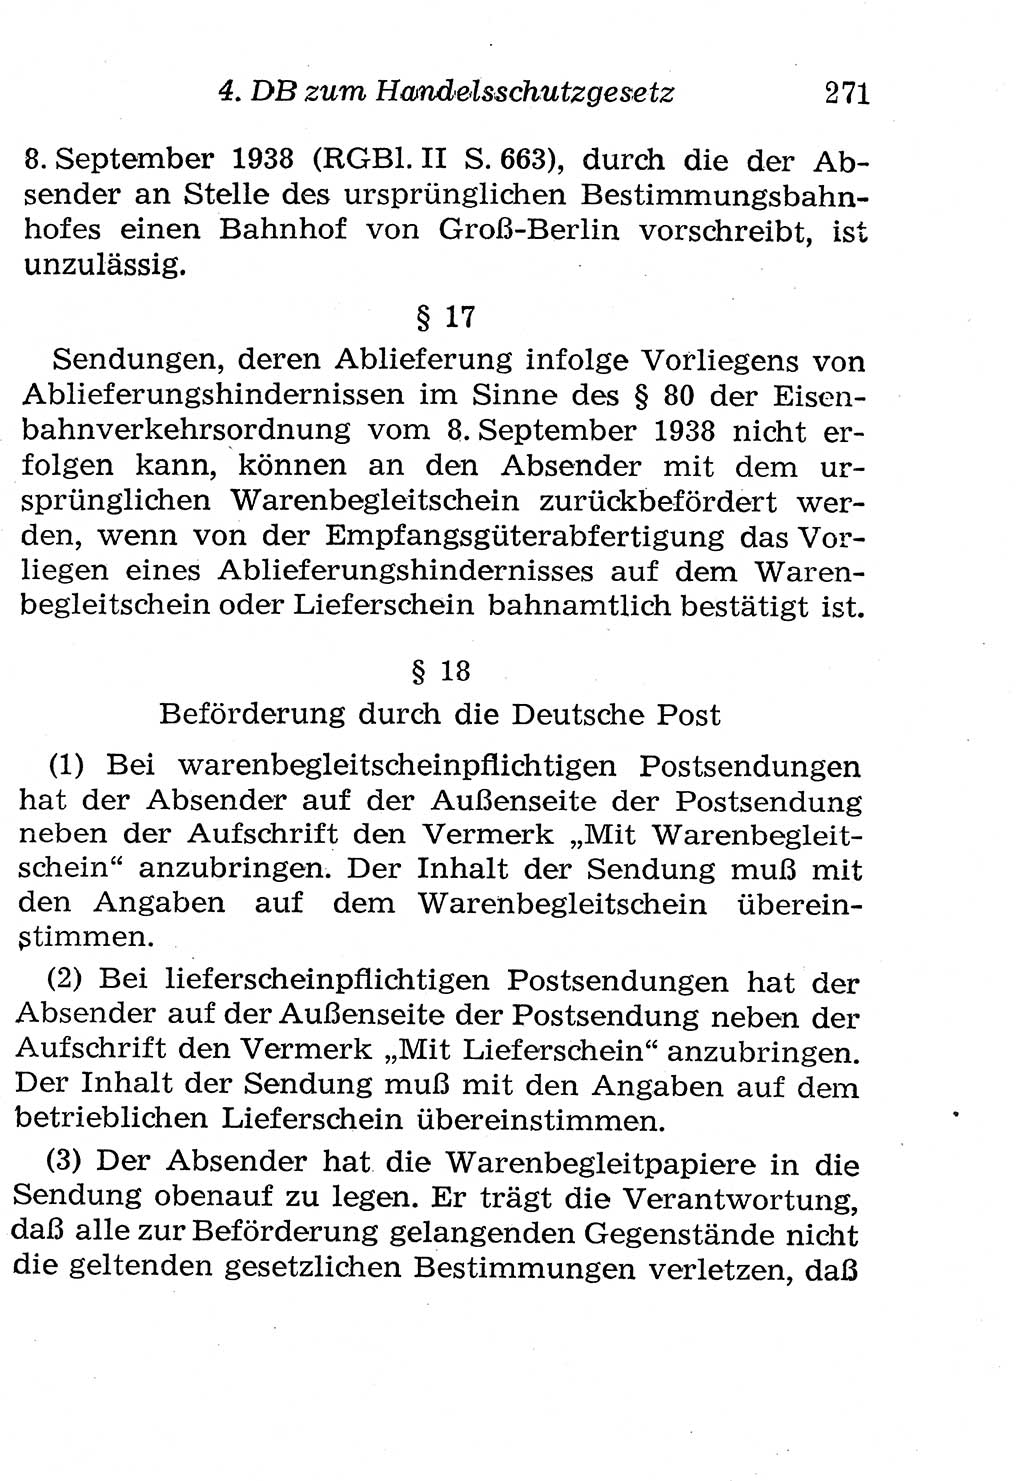 Strafgesetzbuch (StGB) und andere Strafgesetze [Deutsche Demokratische Republik (DDR)] 1958, Seite 271 (StGB Strafges. DDR 1958, S. 271)